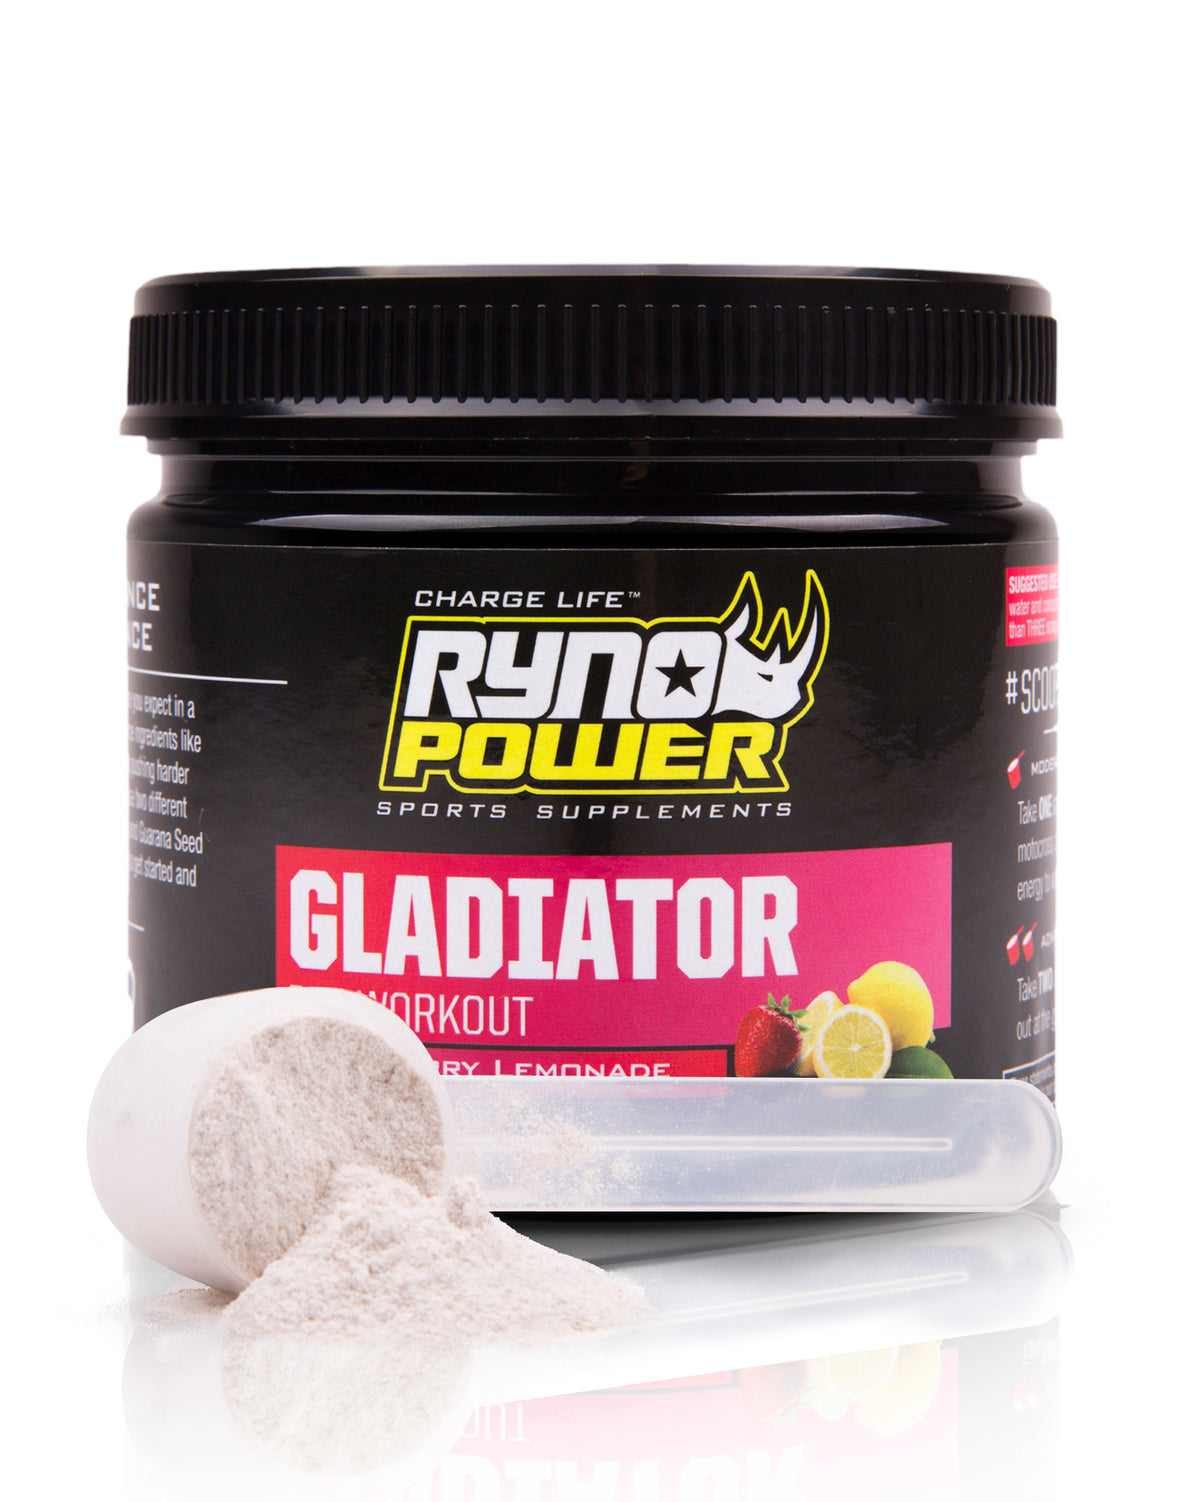 Gladiator Pre-Workout Tub Lifestyle